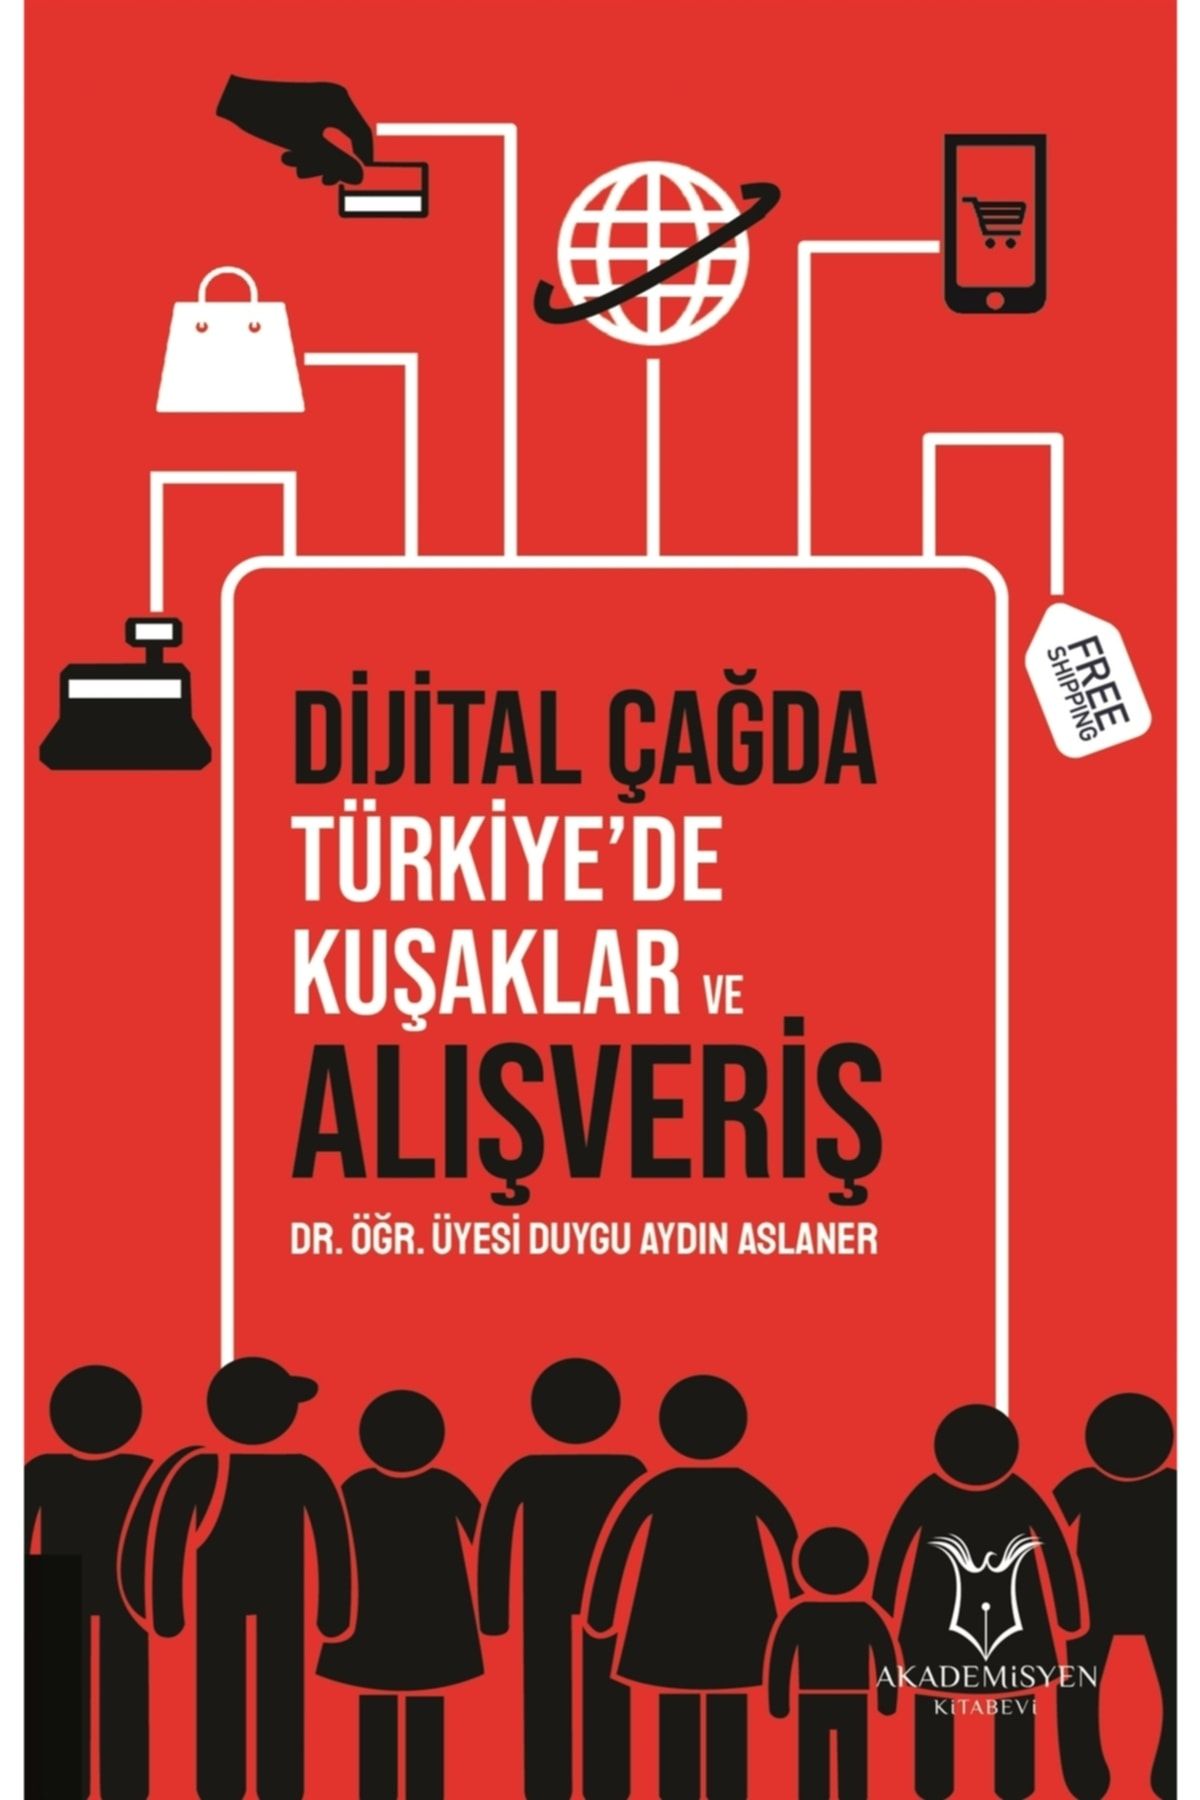 Akademisyen Kitabevi Dijital Çağda Türkiye'de Kuşaklar Ve Alışveriş - Duygu Aydın Aslaner 9786052582619